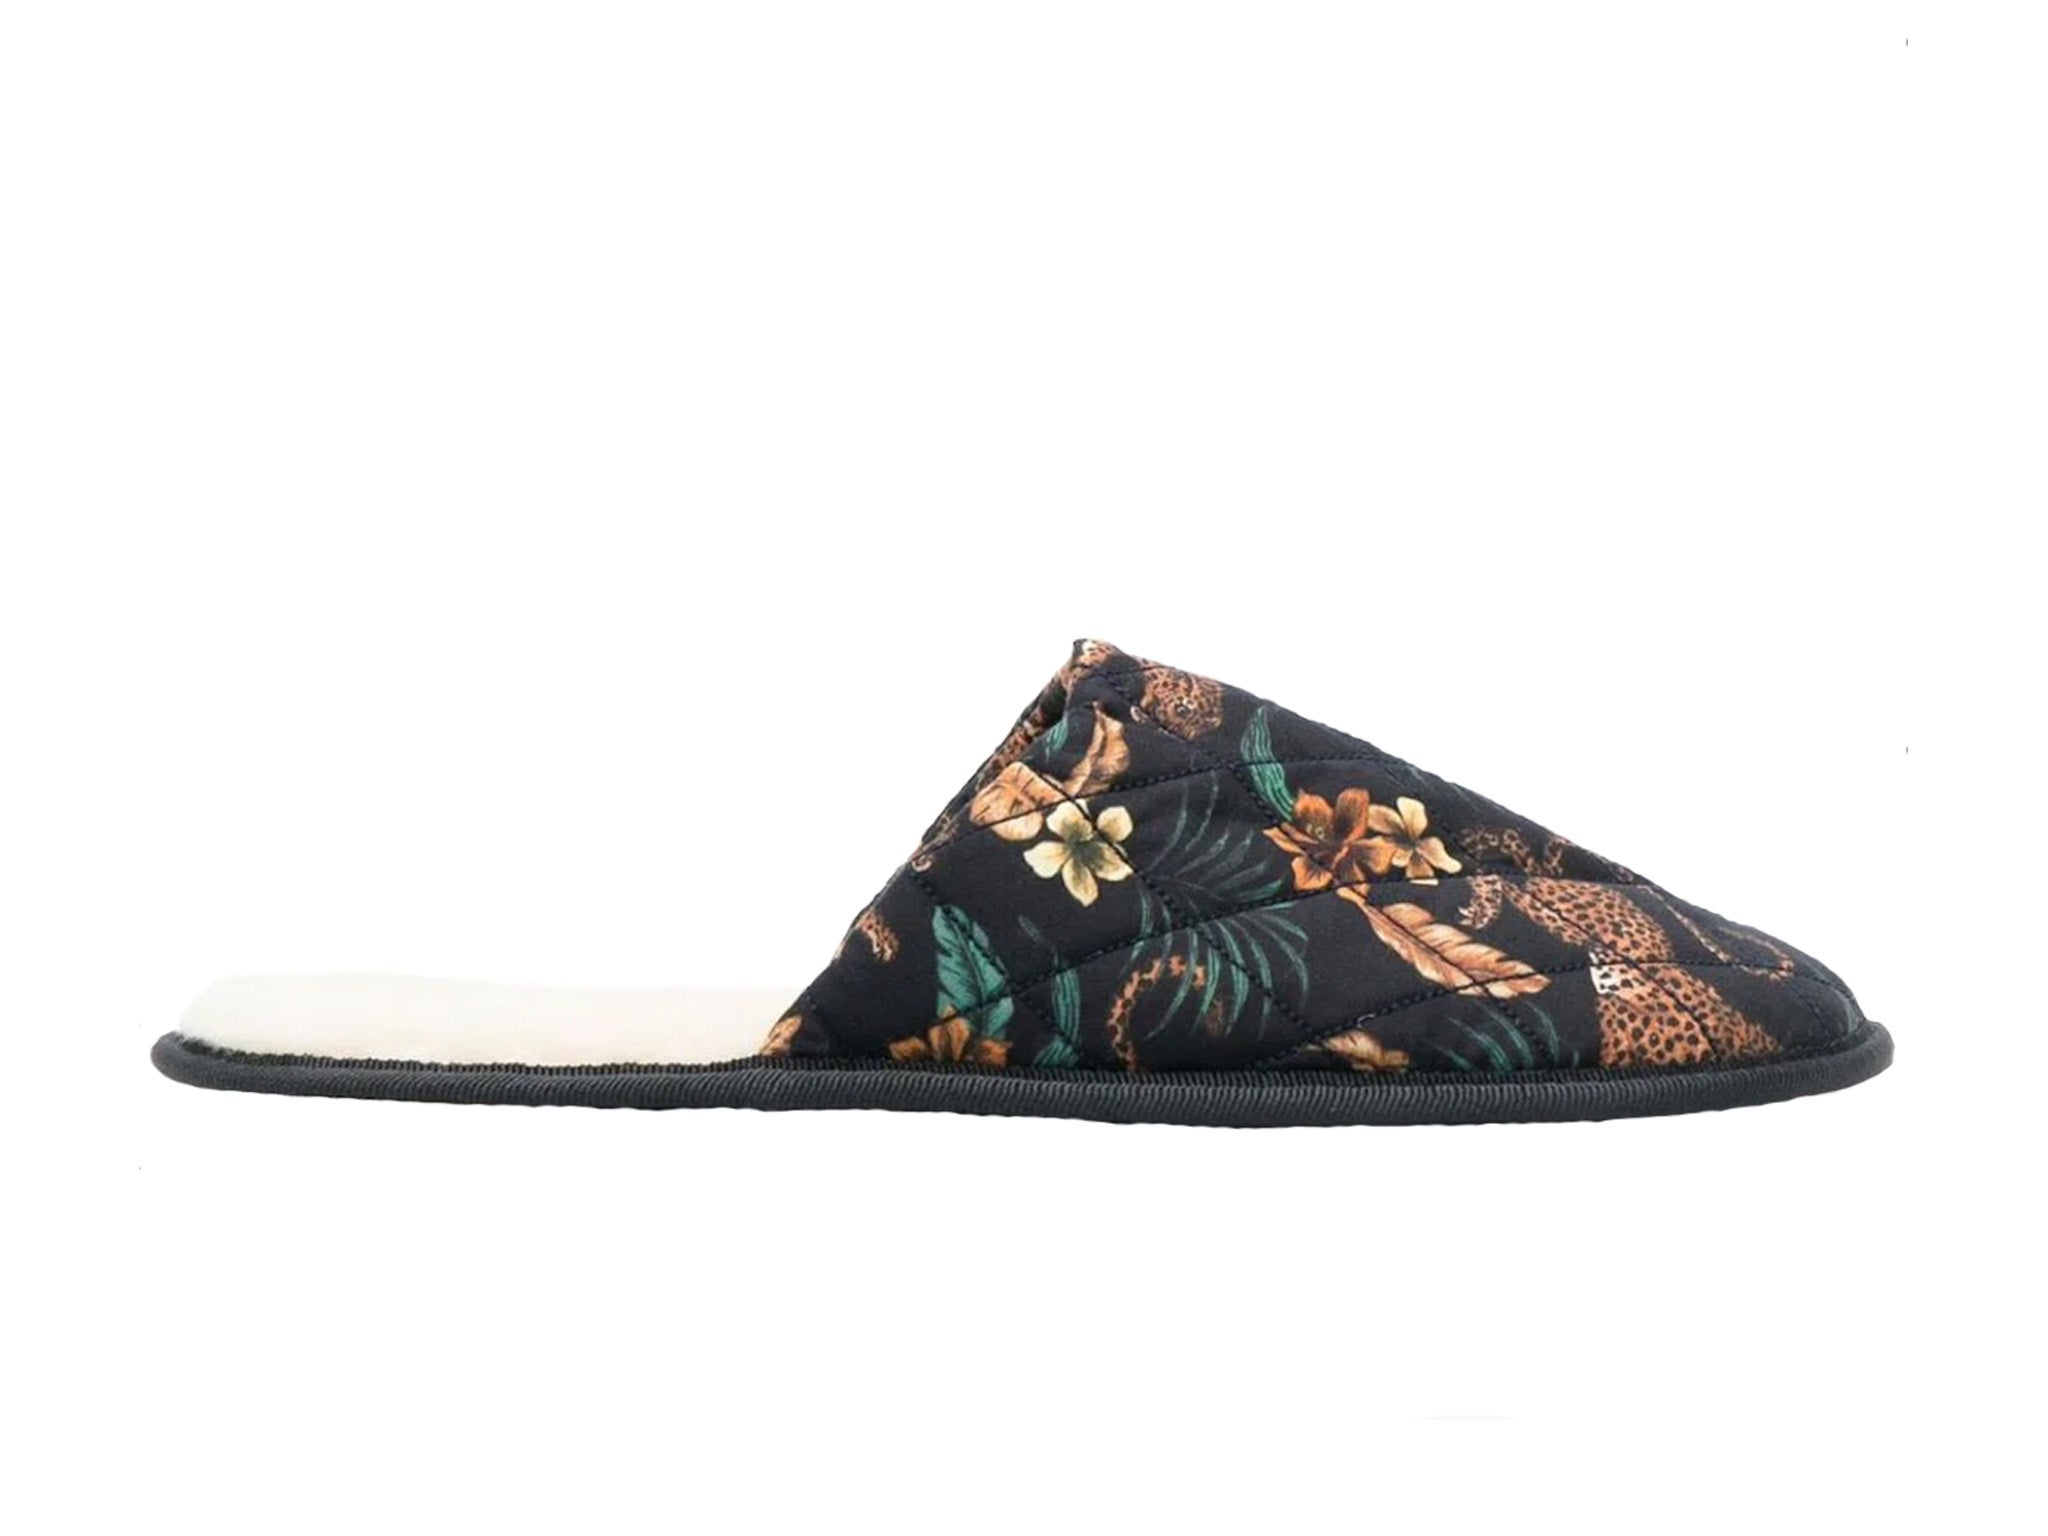 Desmond & Dempsey Soleia leopard slippers